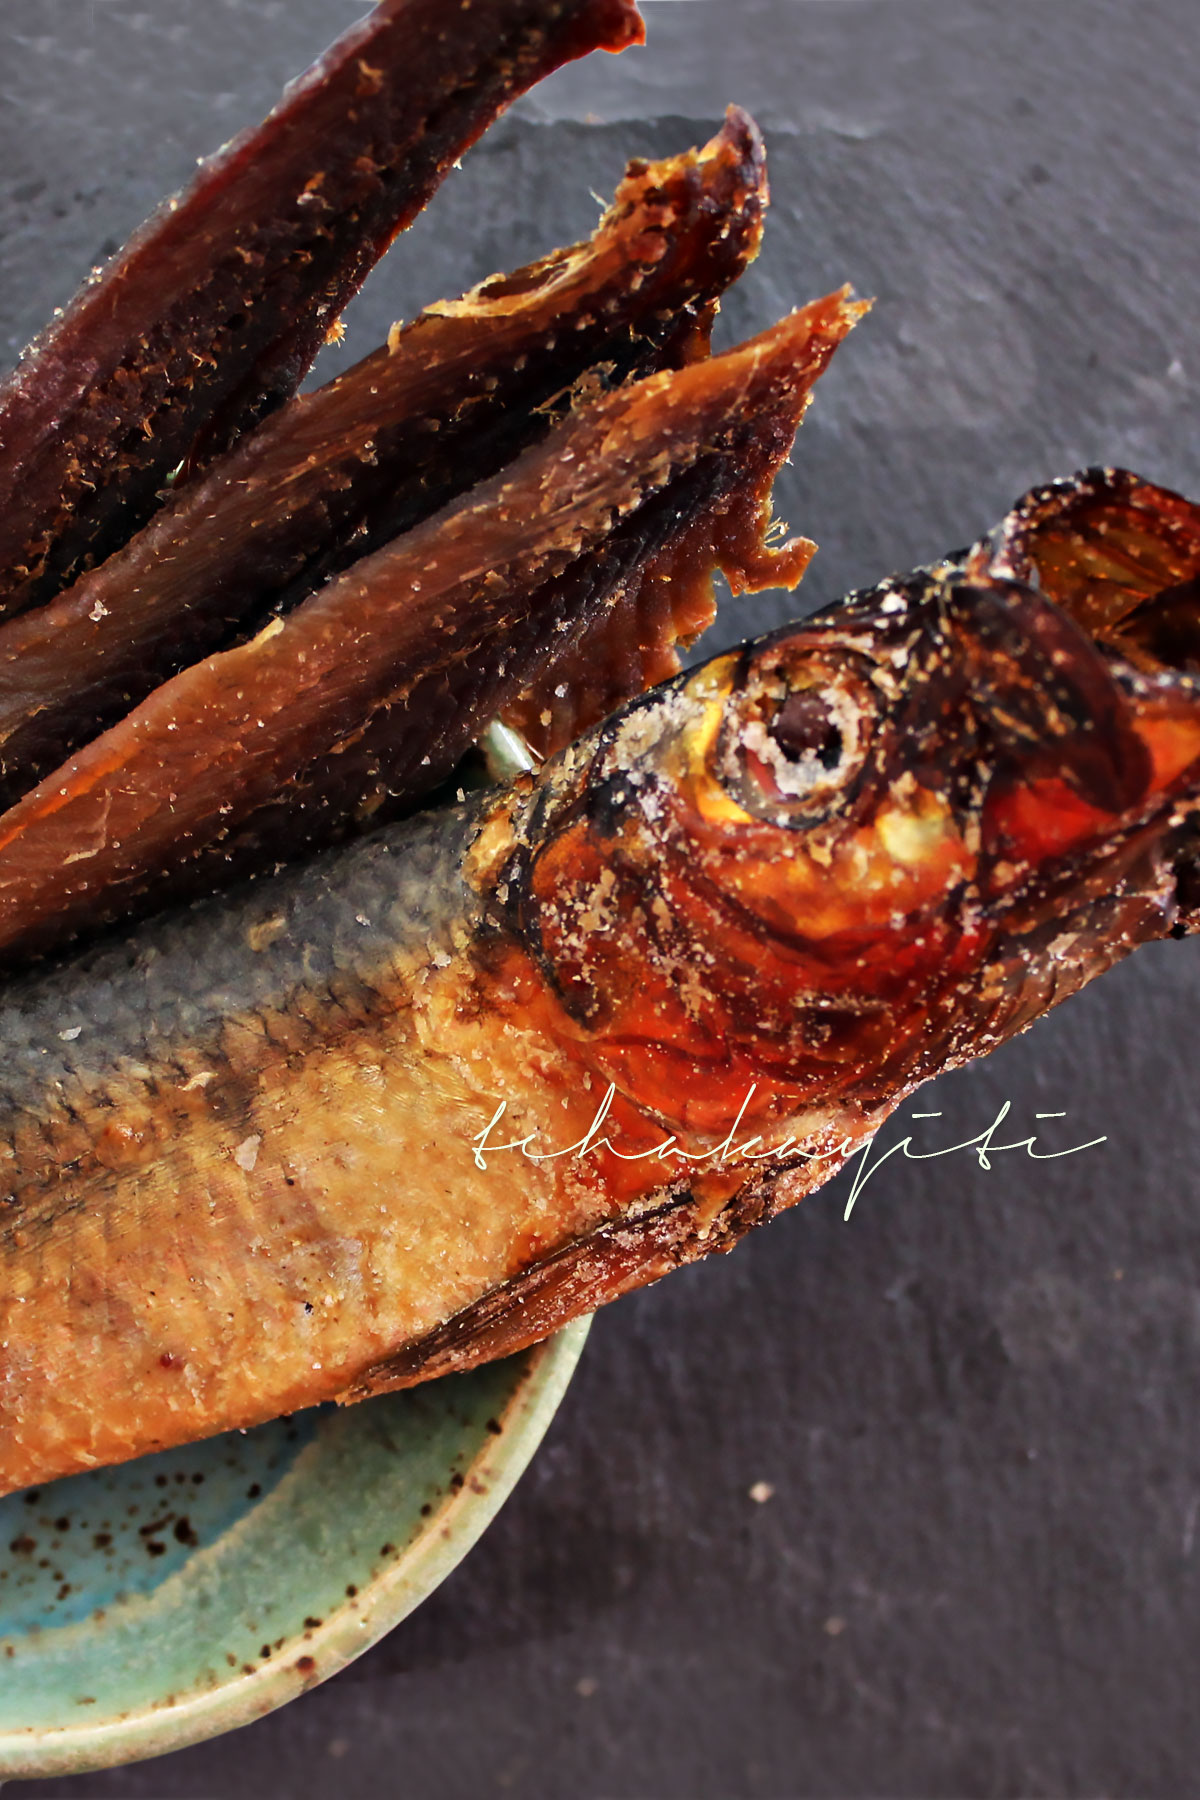 Aransò, hareng saur, un poisson qui a une place de choix dans la cuisine haïtienne